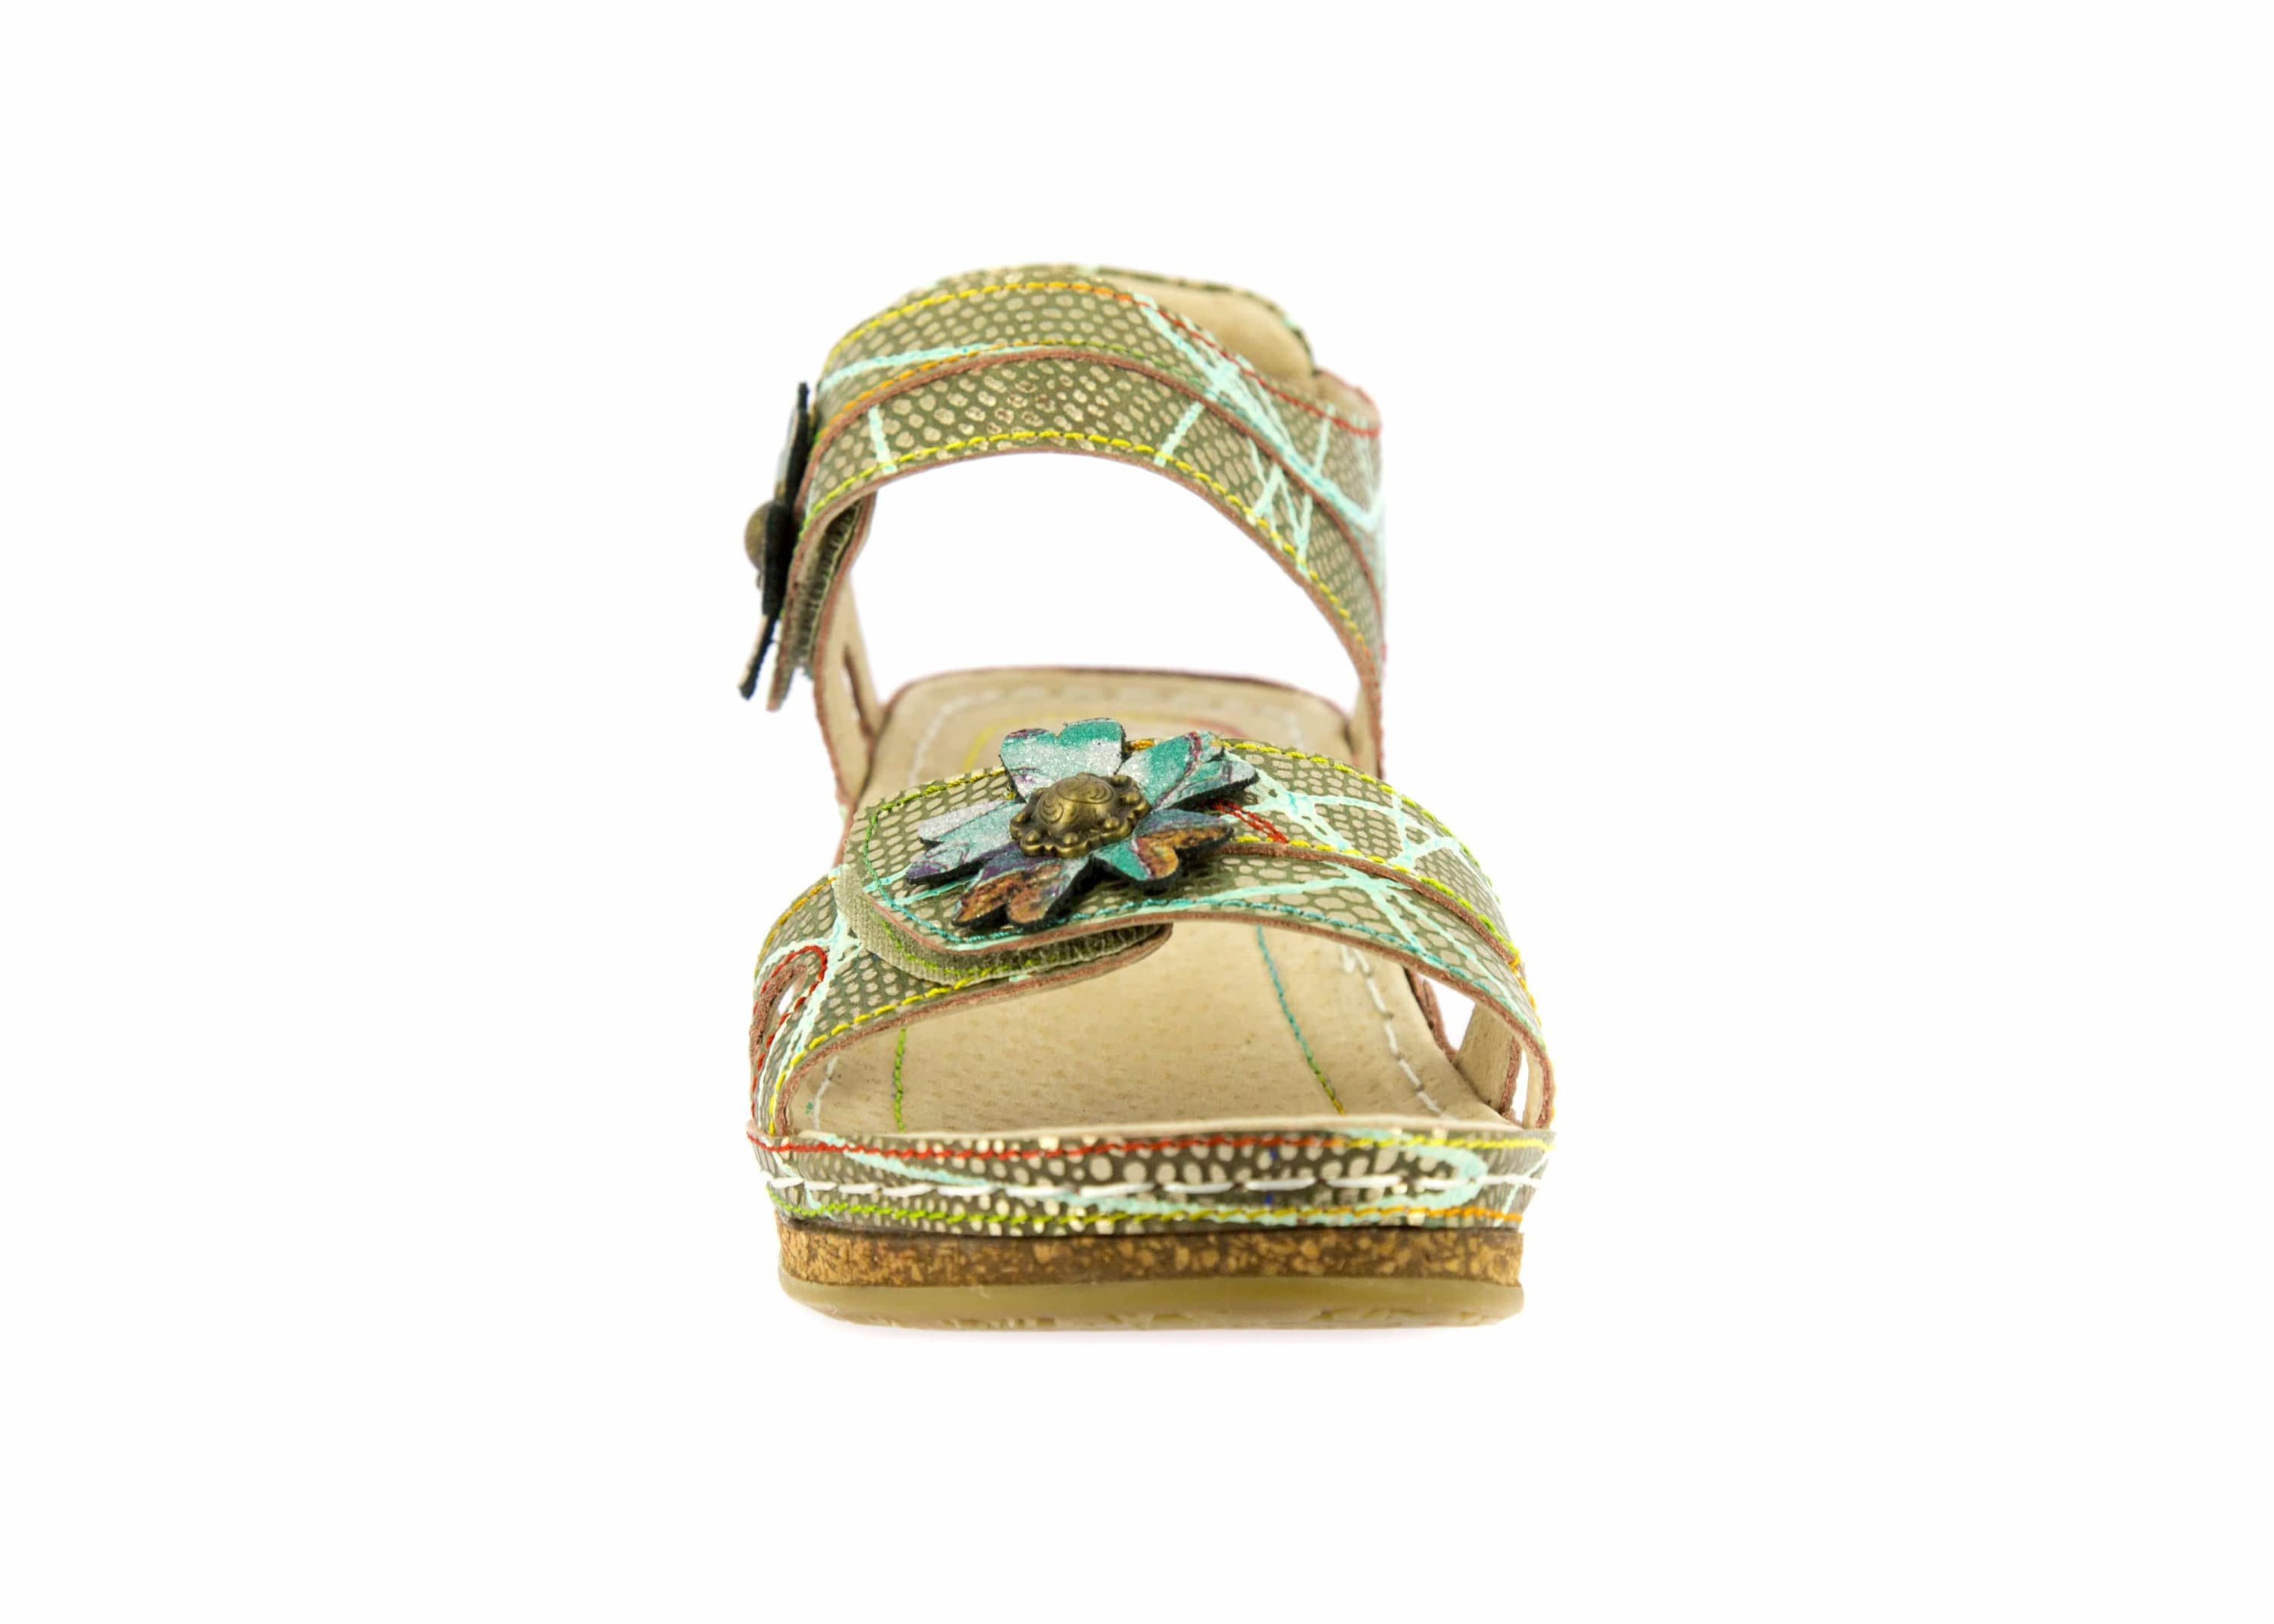 Shoe FACRAHO01 - Sandal